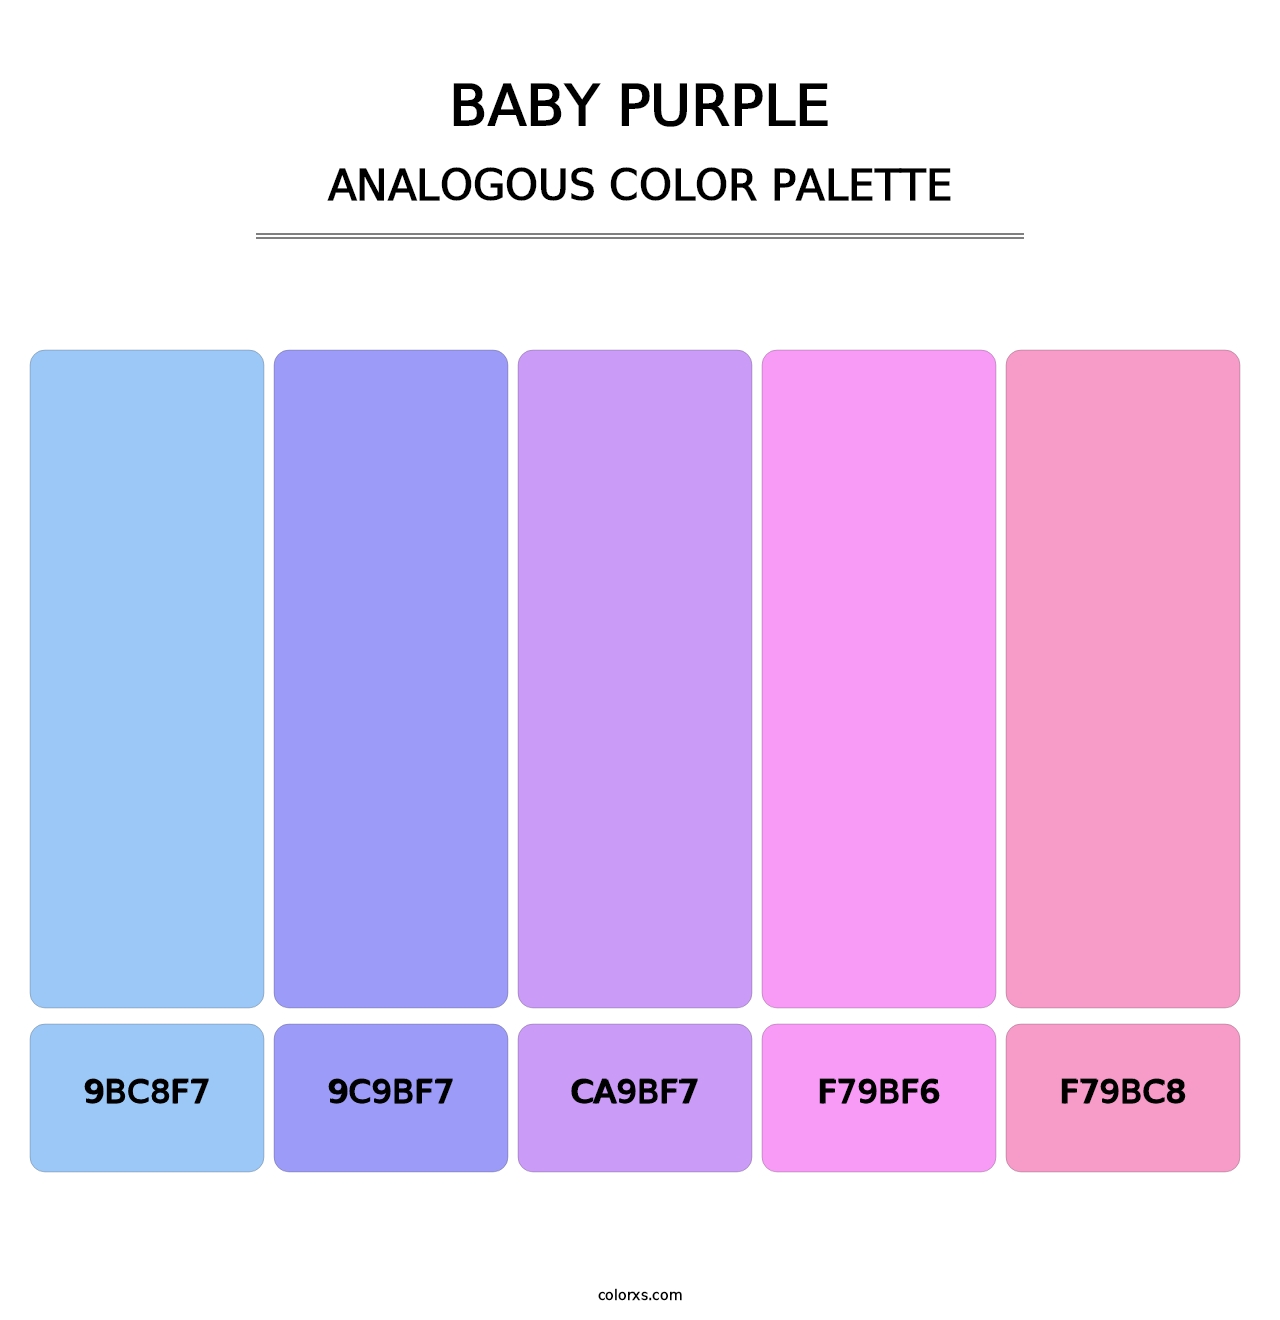 Baby Purple - Analogous Color Palette